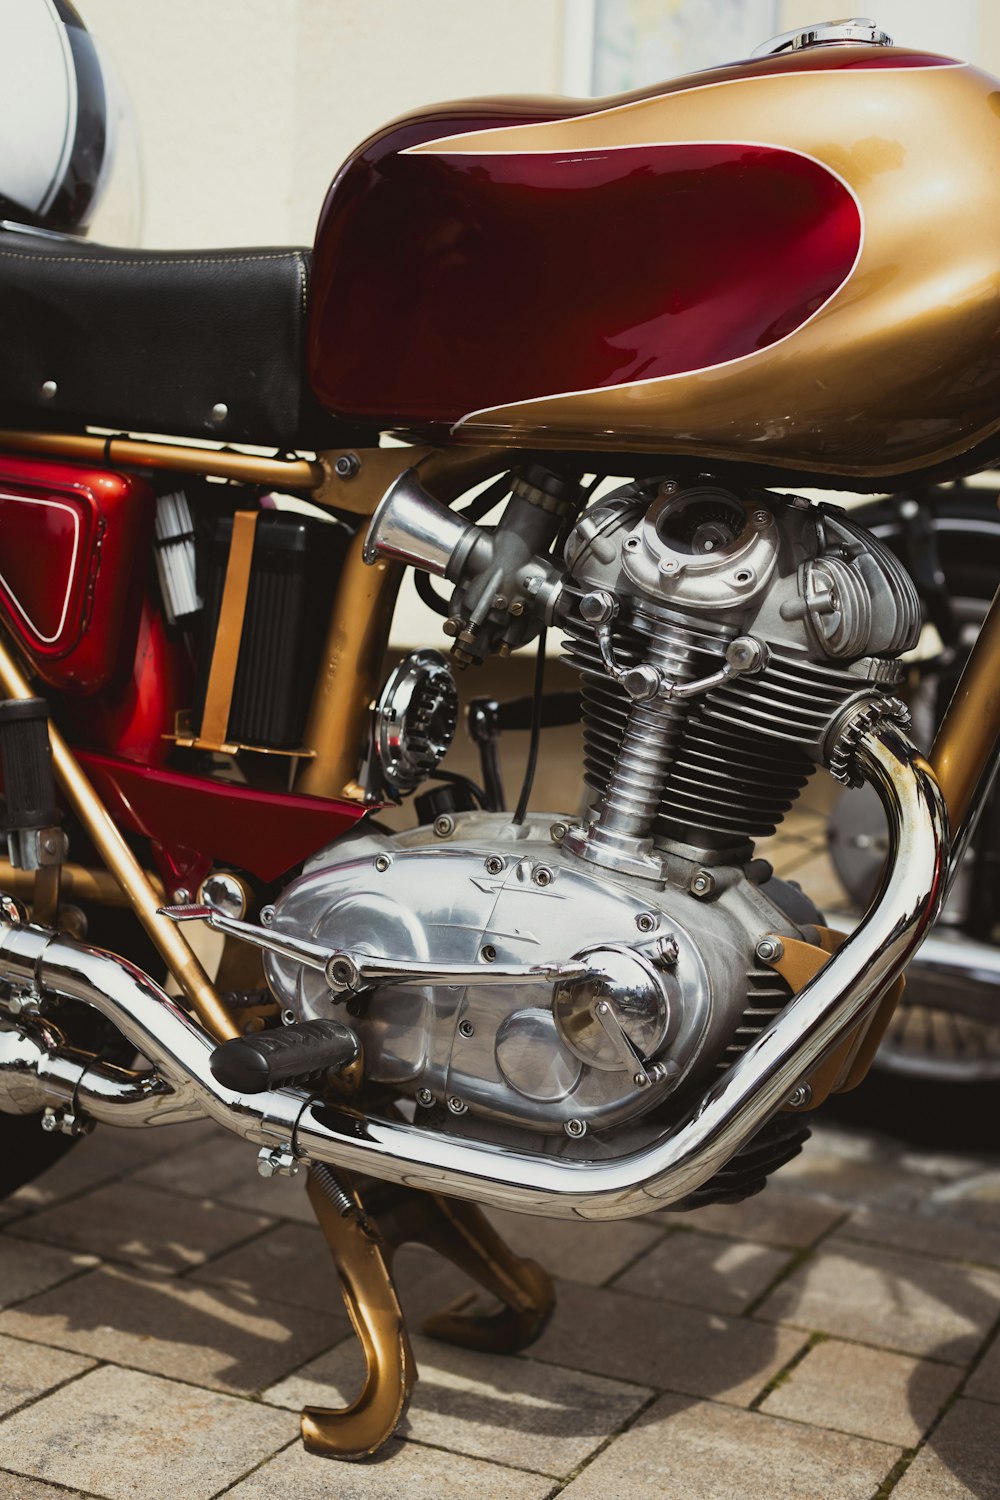 벽돌 보도에 주차된 빨간색과 금색 오토바이